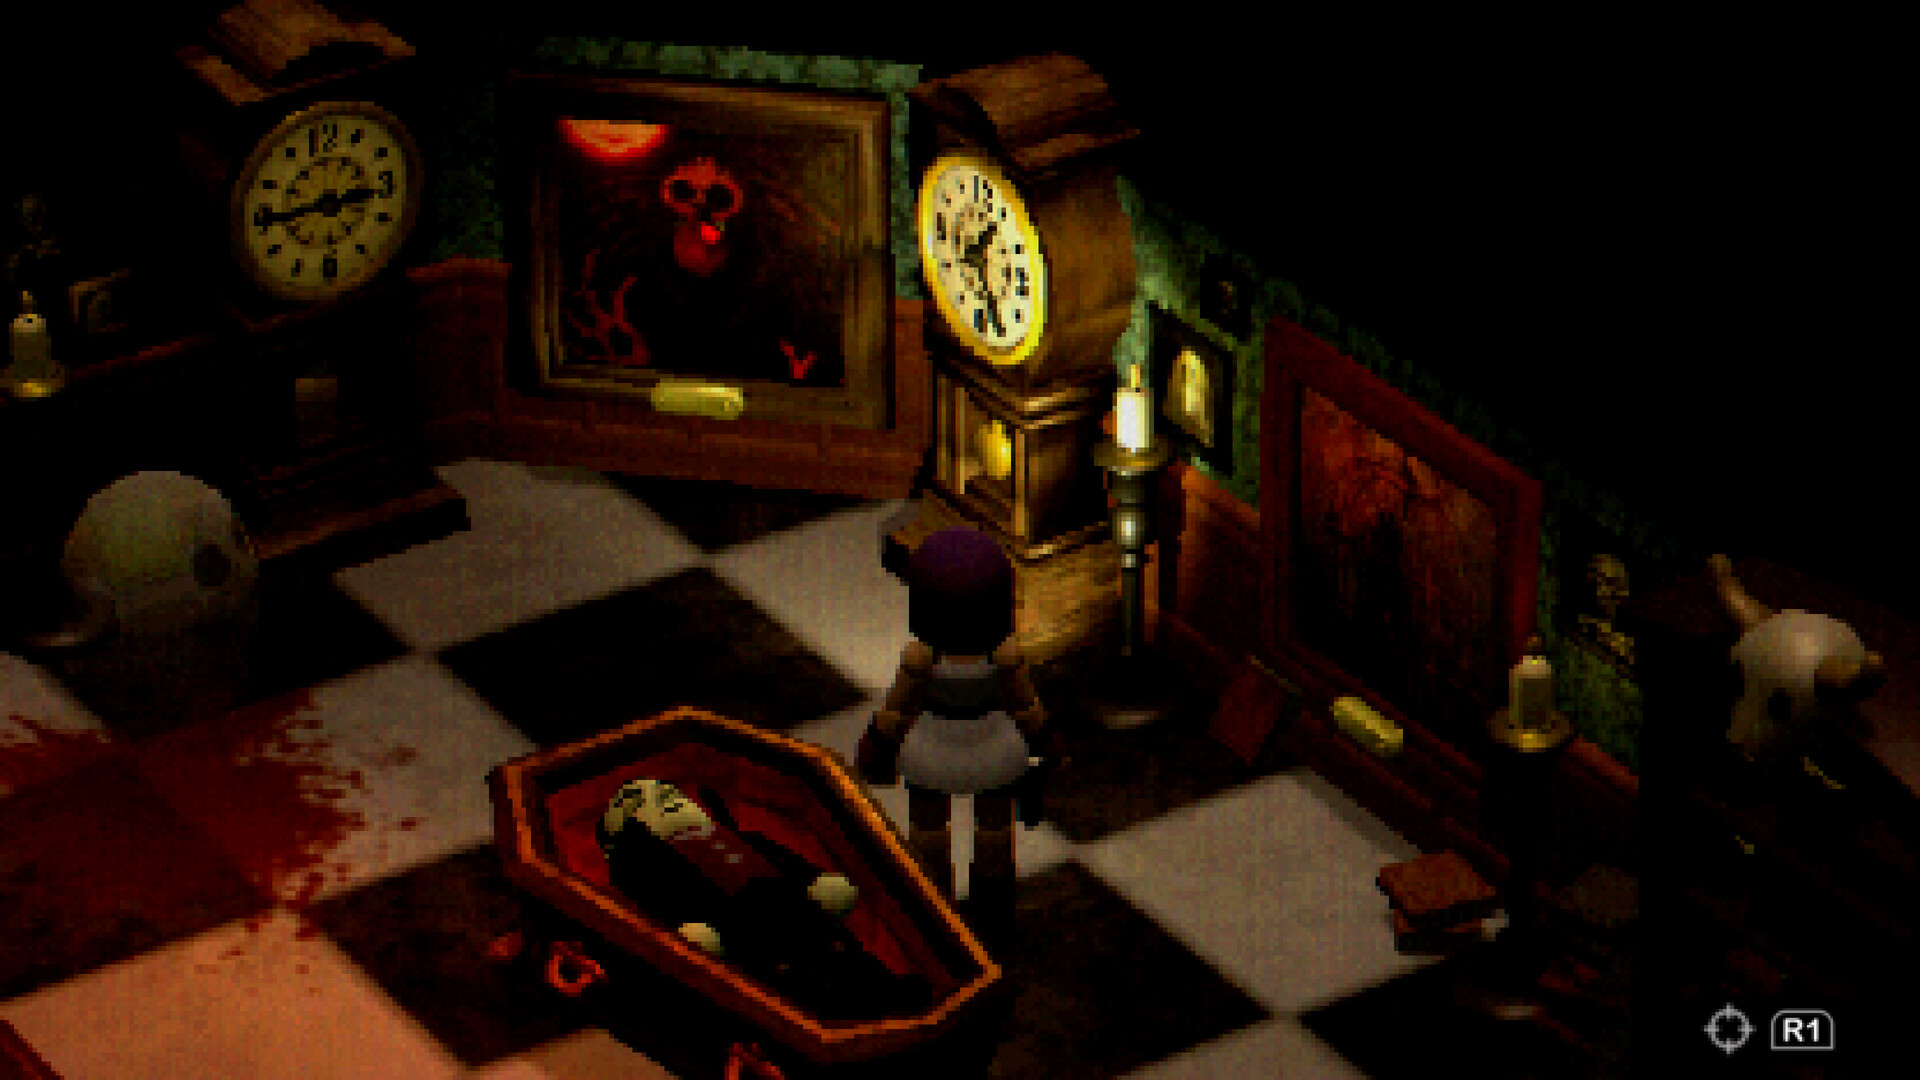 Un personaje en bloque se encuentra en una habitación con un ataúd en el centro sobre azulejos blancos y negros, junto a un gran reloj de pie.